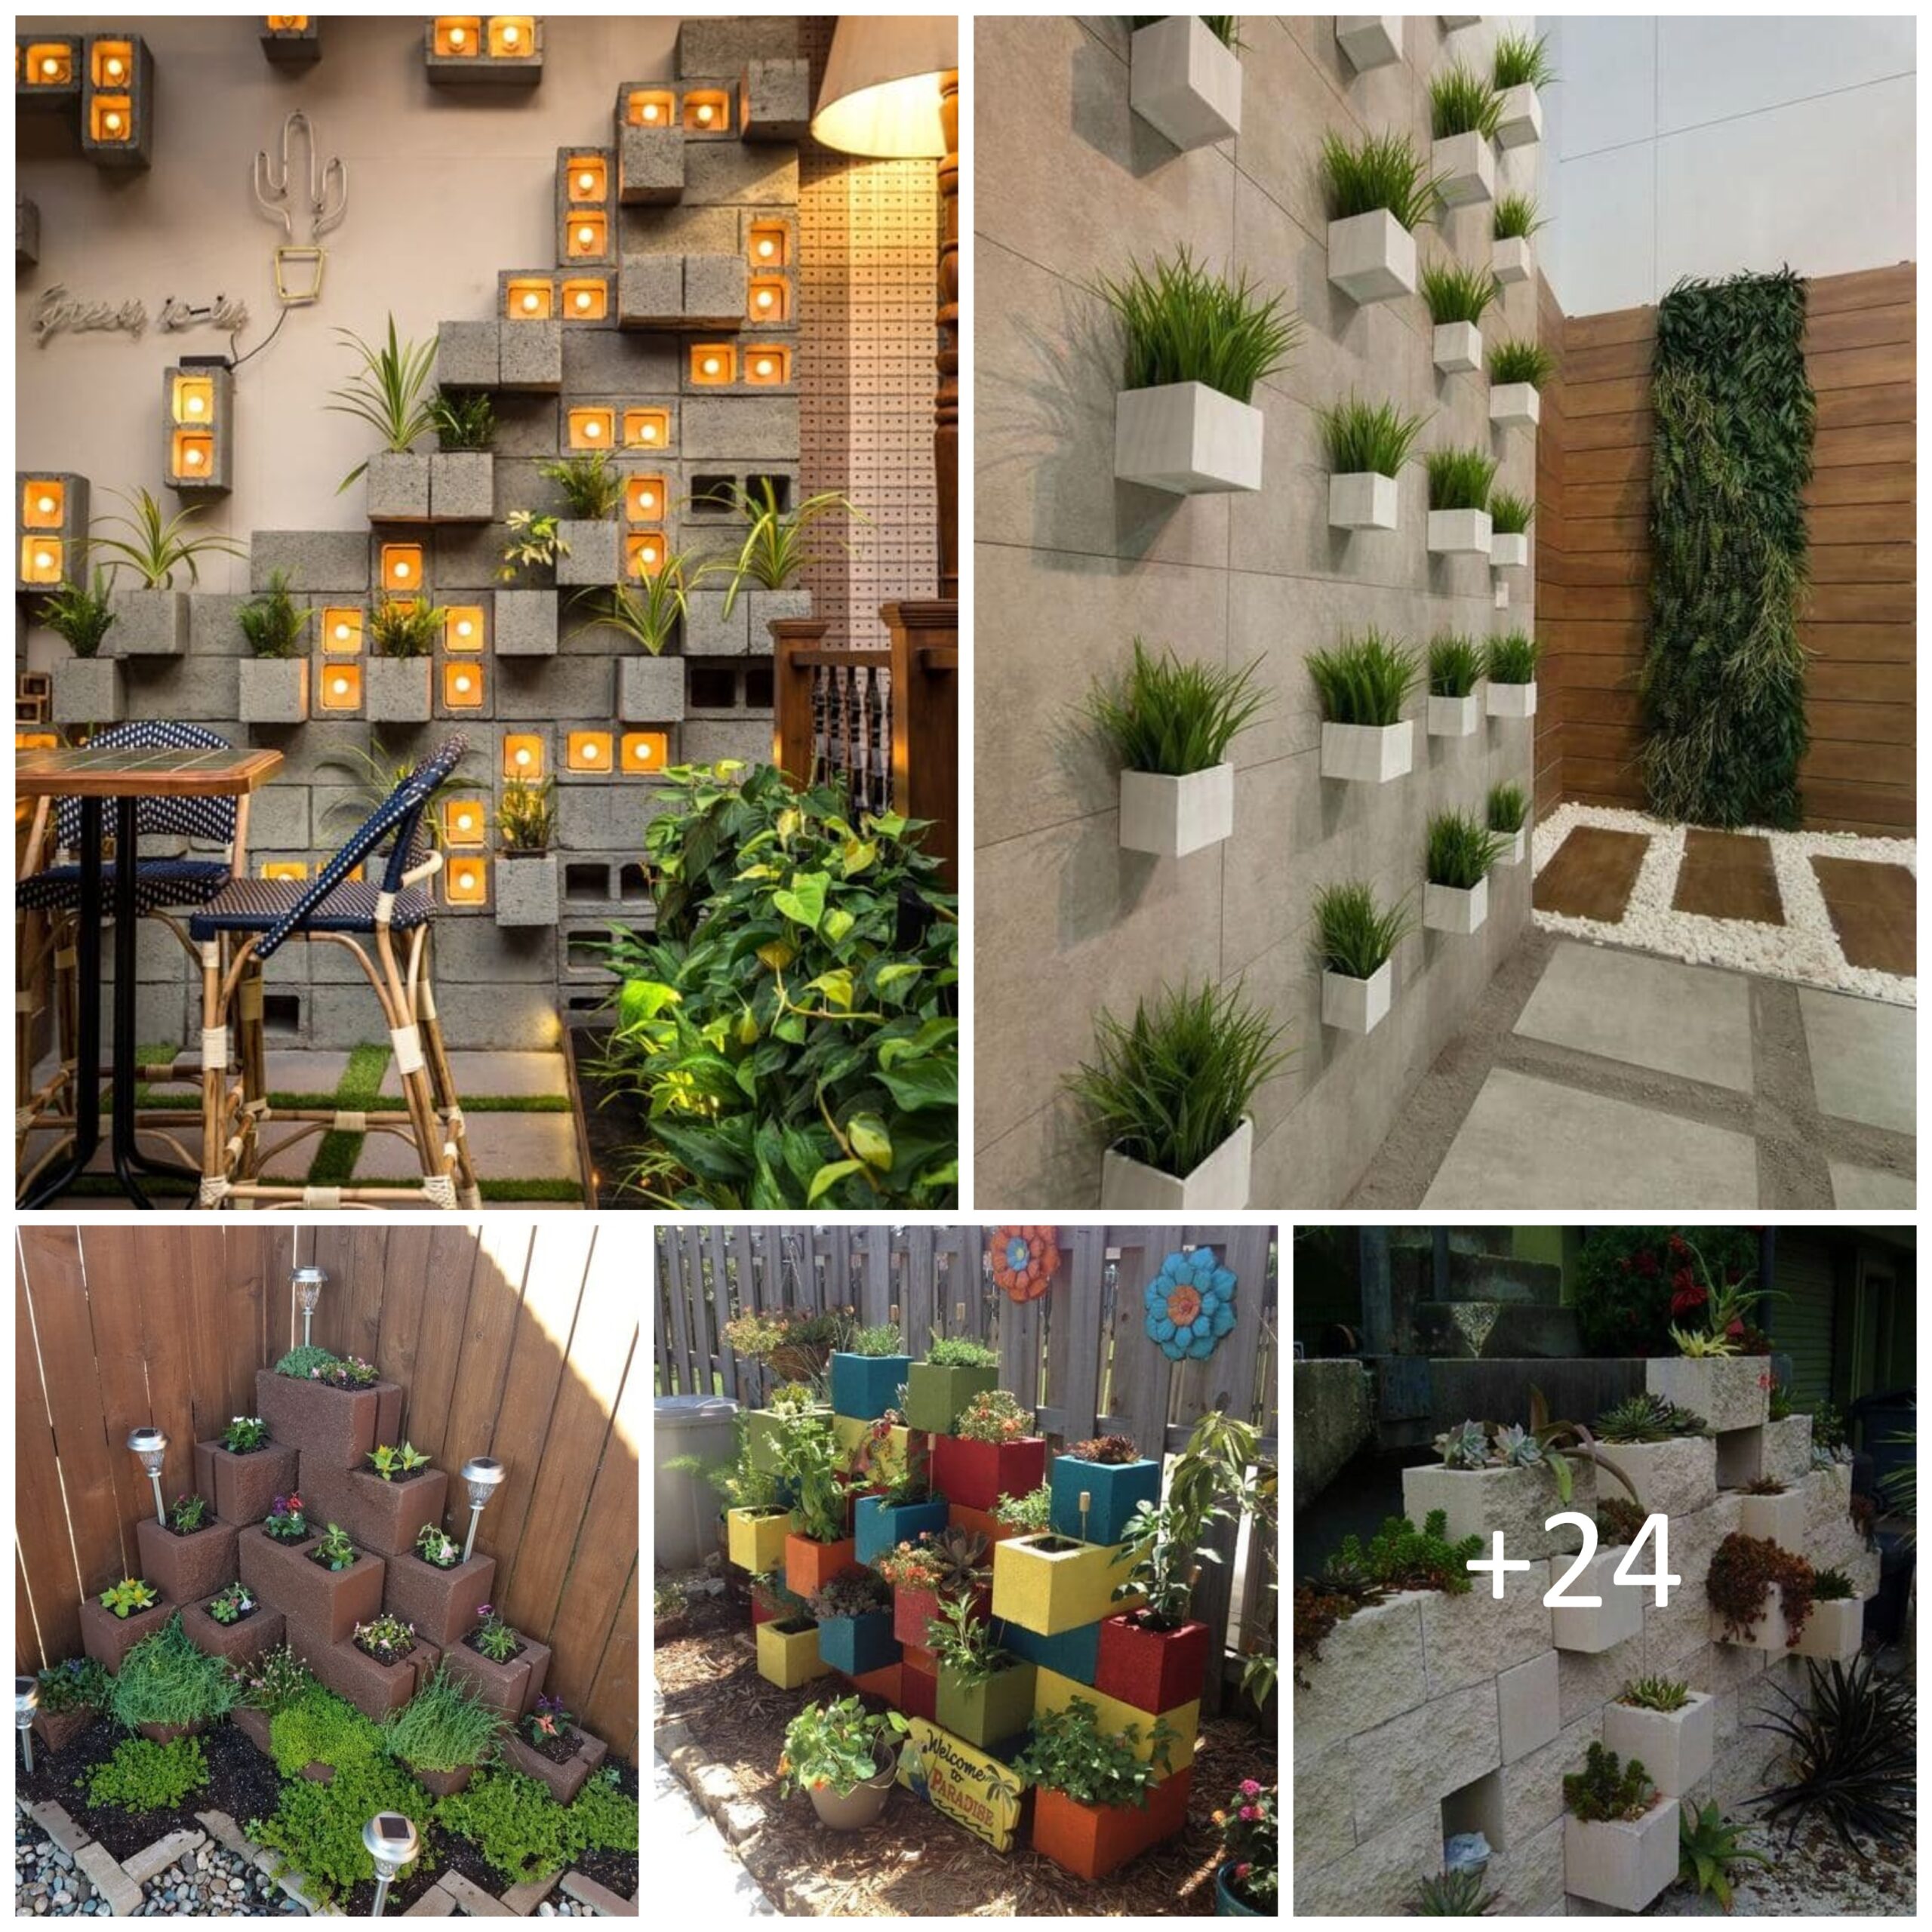 Cinder Block Garden Ideas and Designs